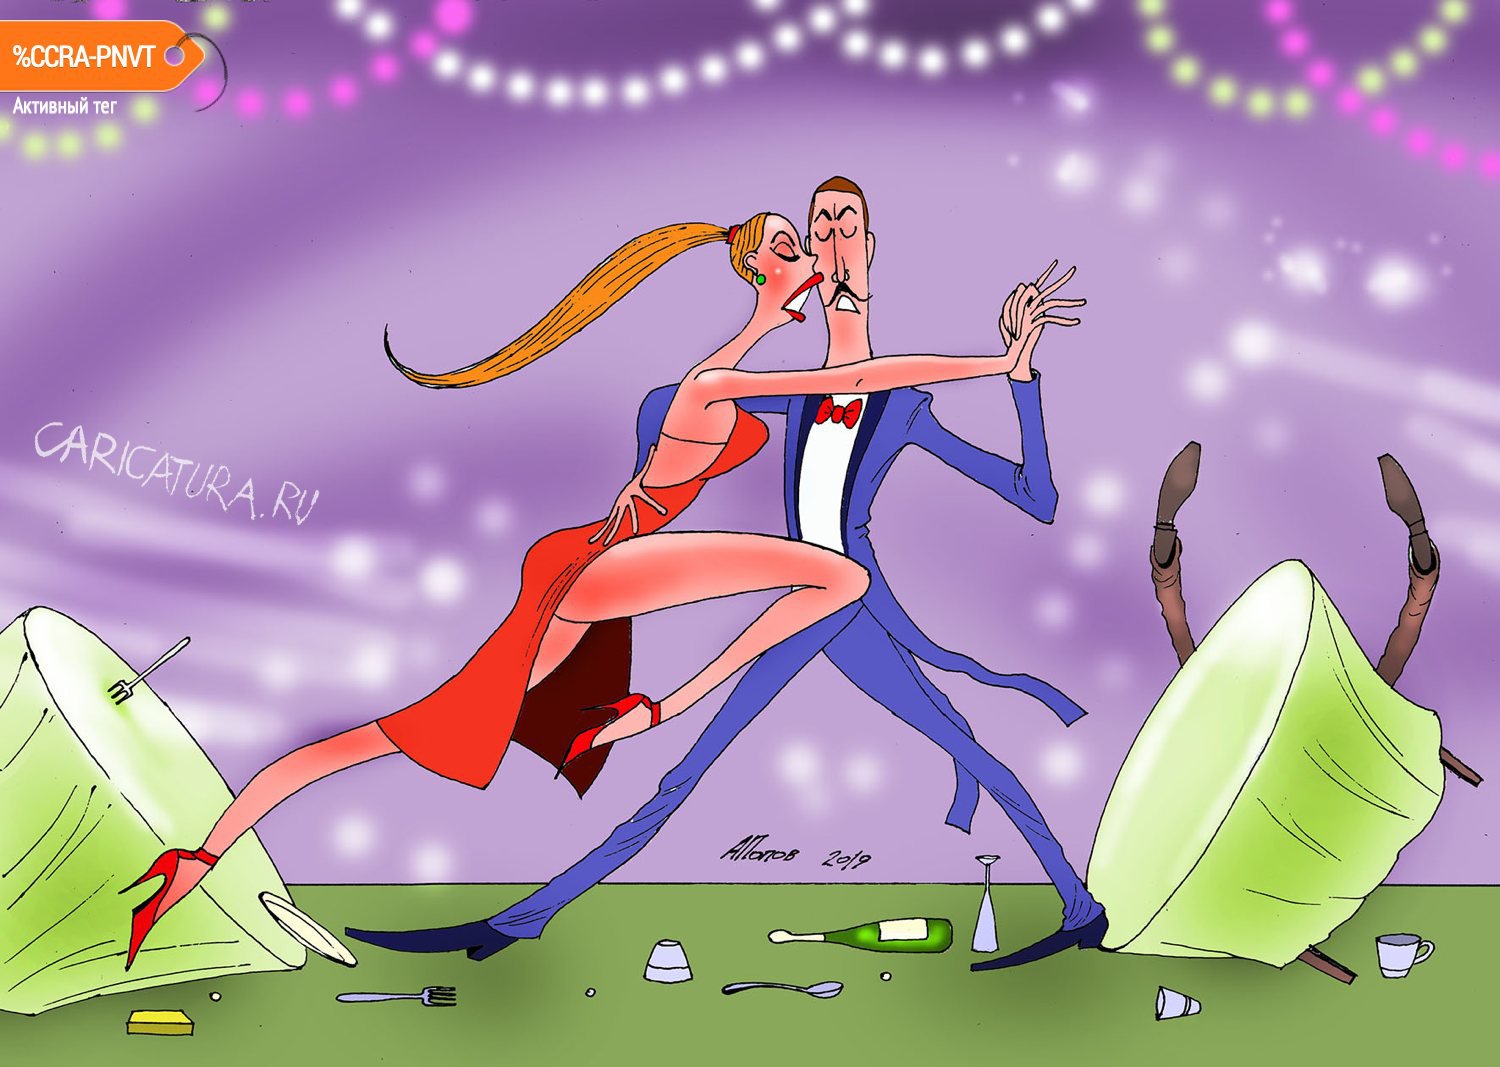 Карикатура "Ох и закружит этот танец!", Александр Попов